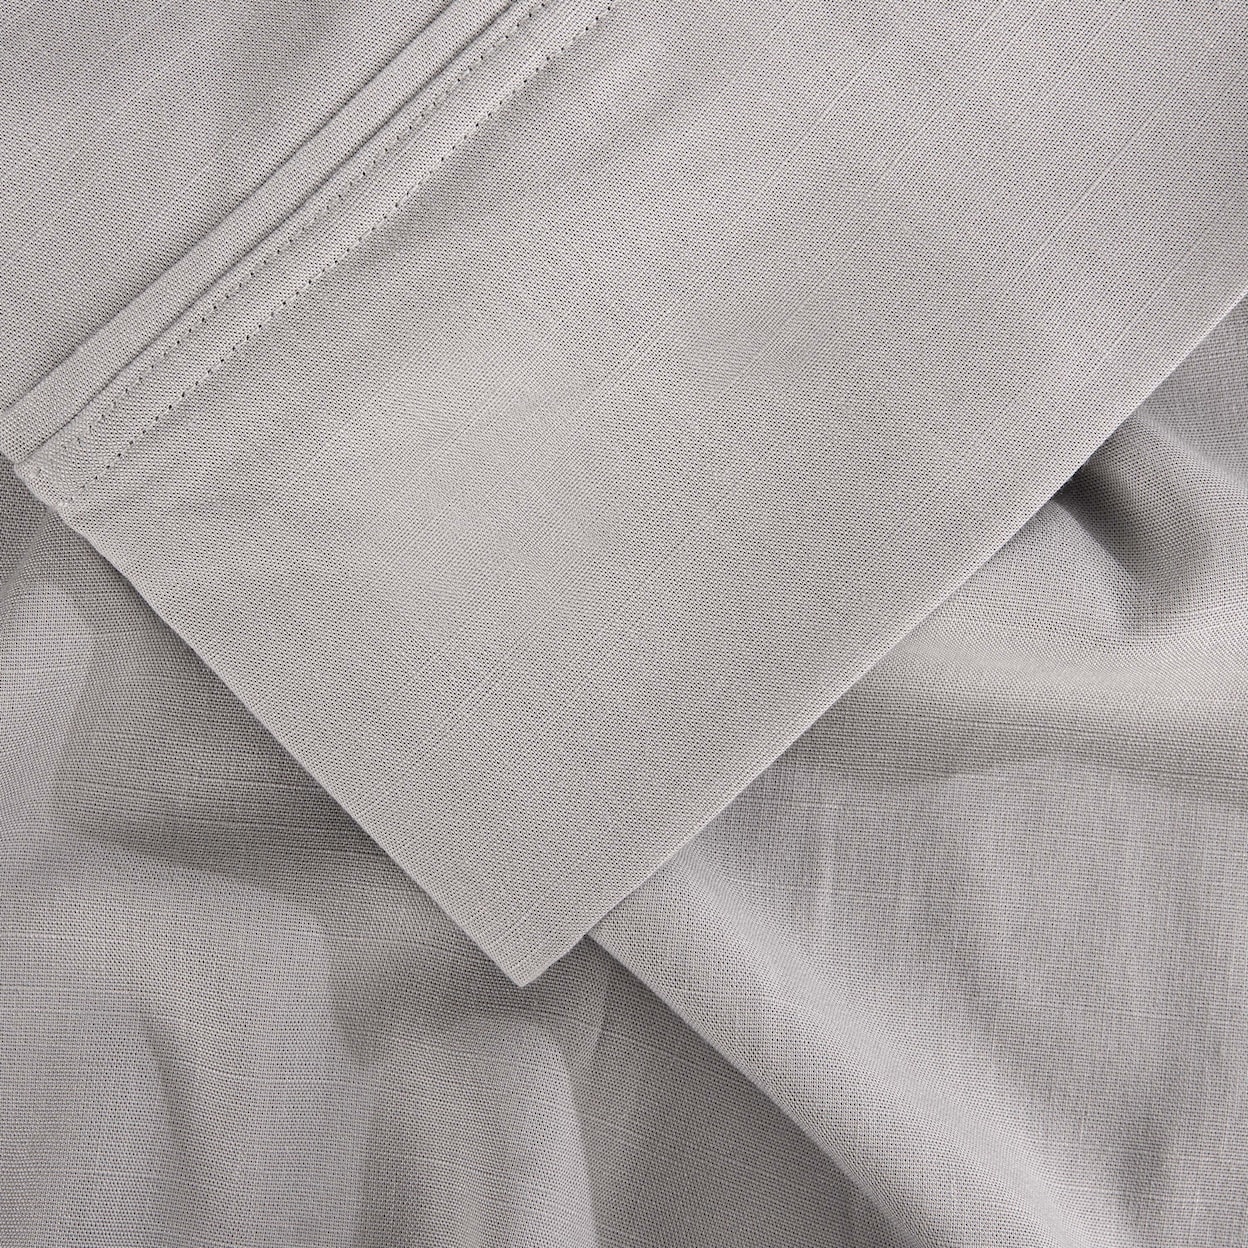 Bedgear Hyper Linen Sheets Sheet Set,Grey, Queen